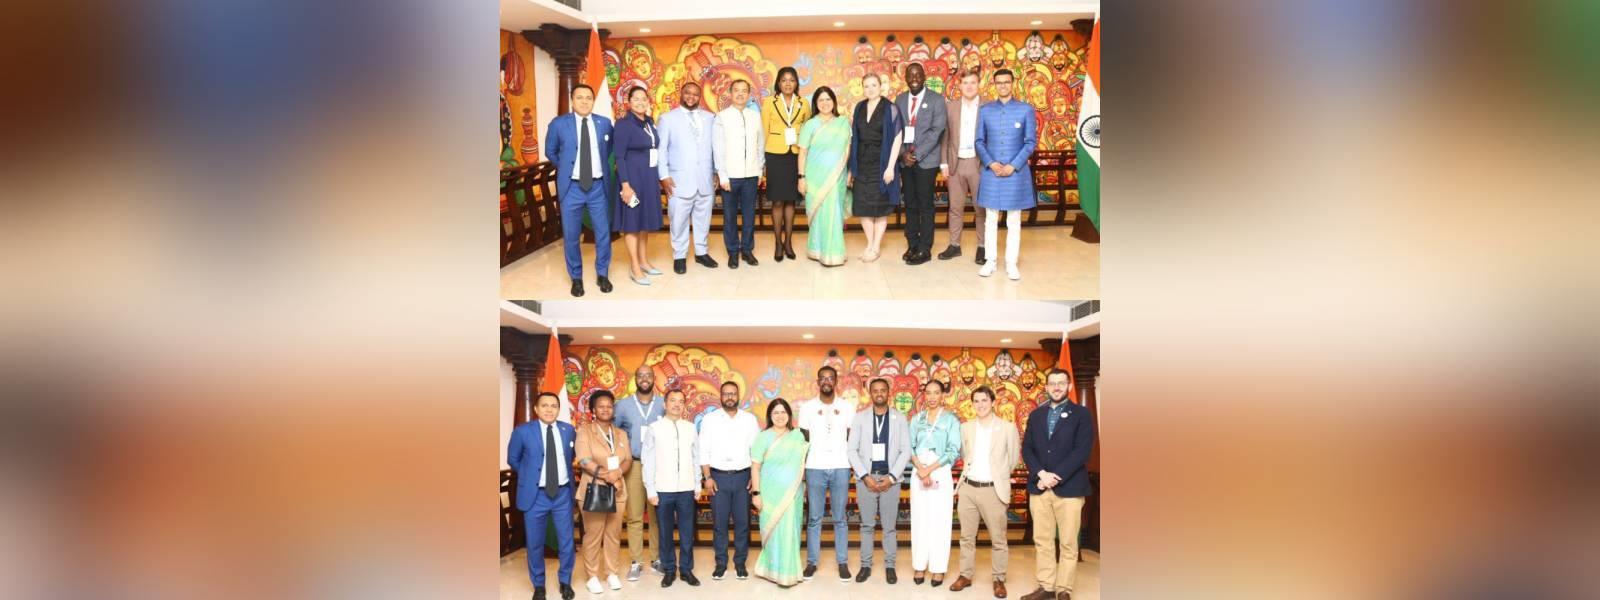 विदेश राज्य मंत्री श्रीमती मीनाक्षी लेखी ने नई दिल्ली में ICCR के जेननेक्स्ट डेमोक्रेसी नेटवर्क प्रोग्राम के हिस्से के रूप में 9 देशों के 28 युवा नेताओं के एक समूह की मेजबानी की